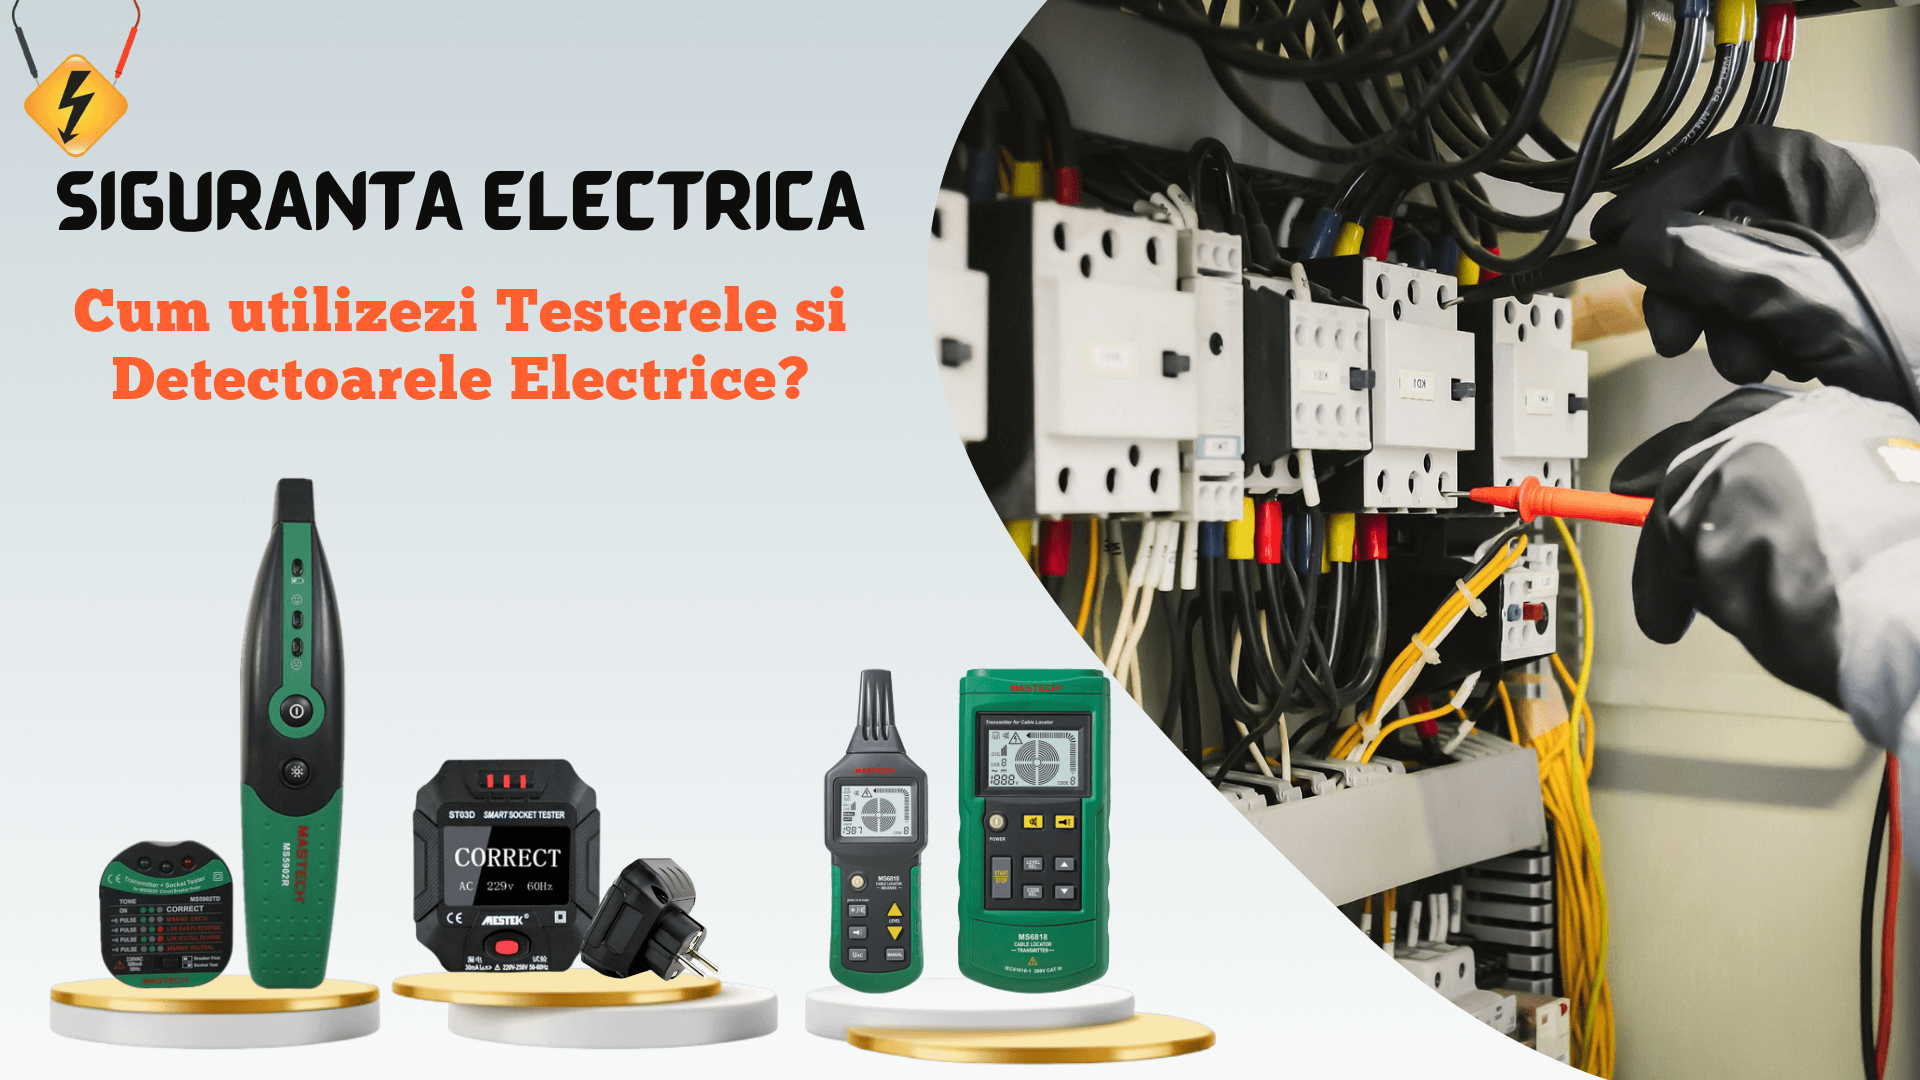 SIGURANTA ELECTRICA - Utilizarea corecta a Testerelor si Detectoarelor electrice